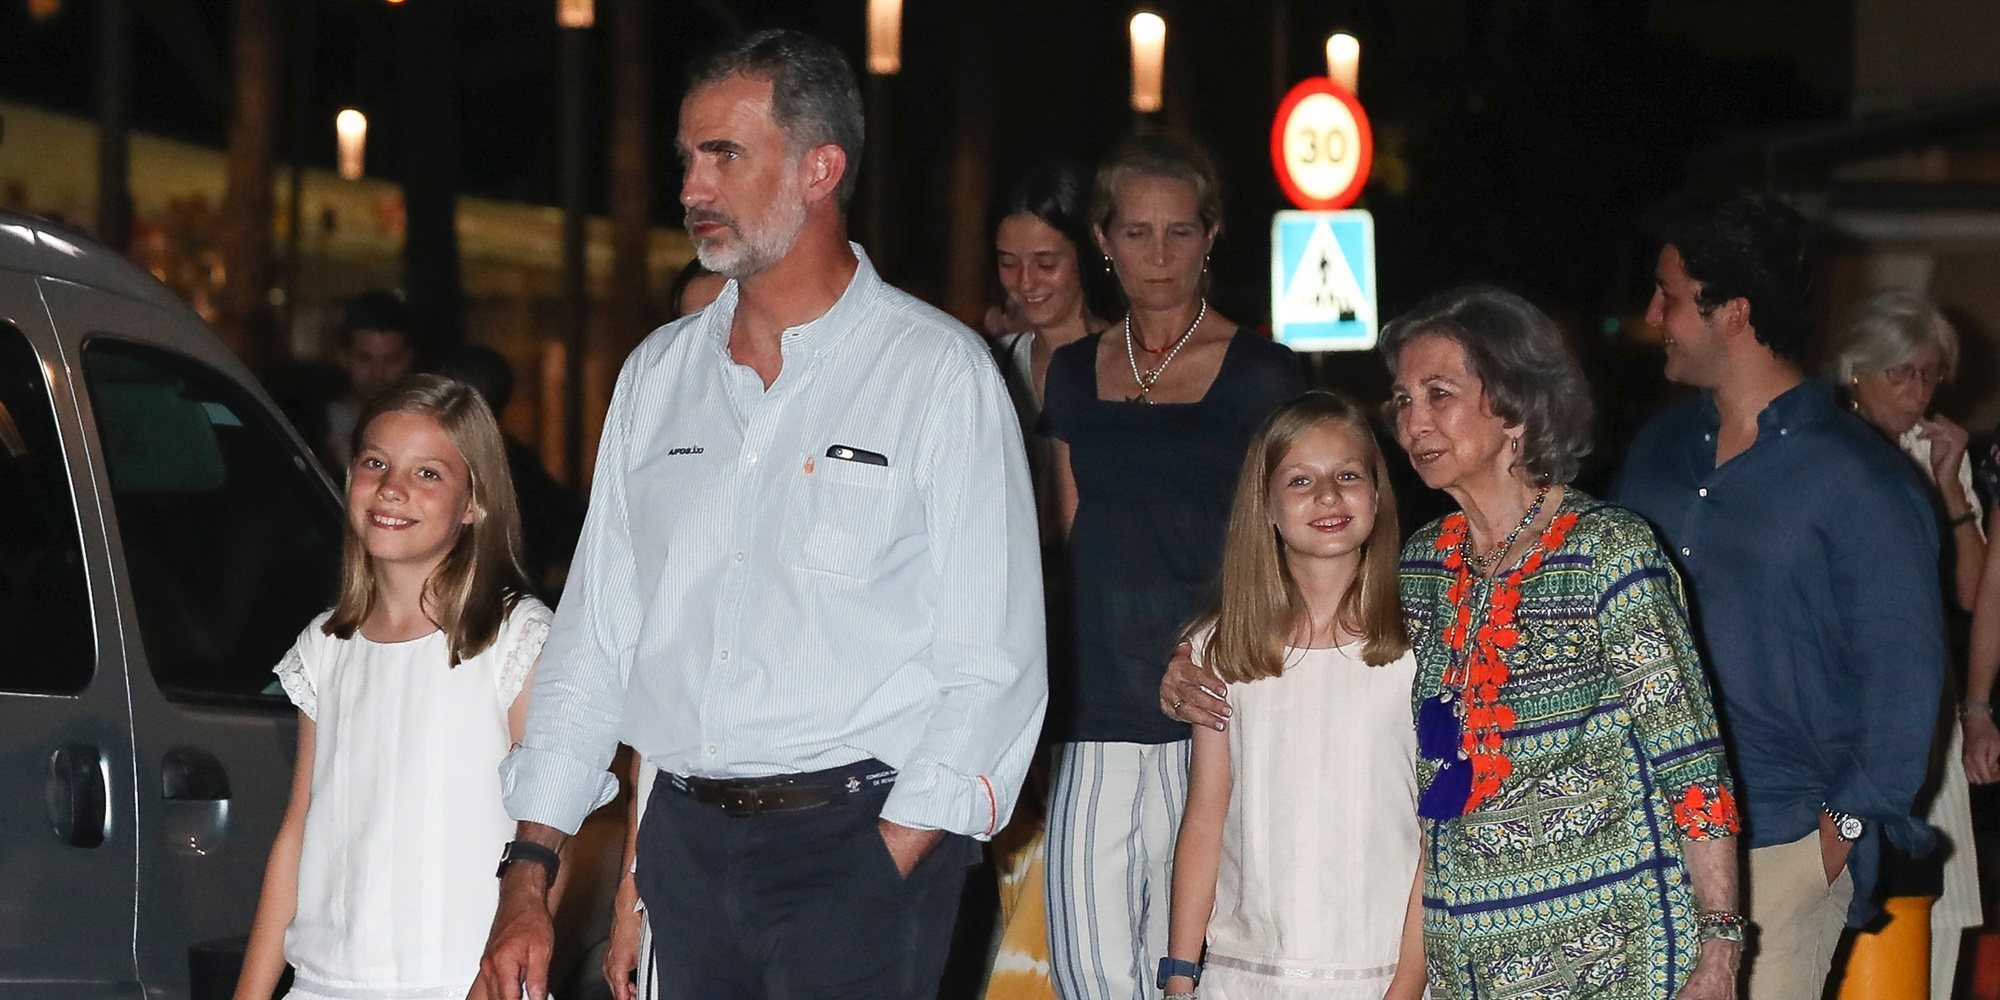 La reaparición de Froilán y la felicidad de la Infanta Sofía marcan la cena de la Familia Real tras la Copa del Rey de Vela